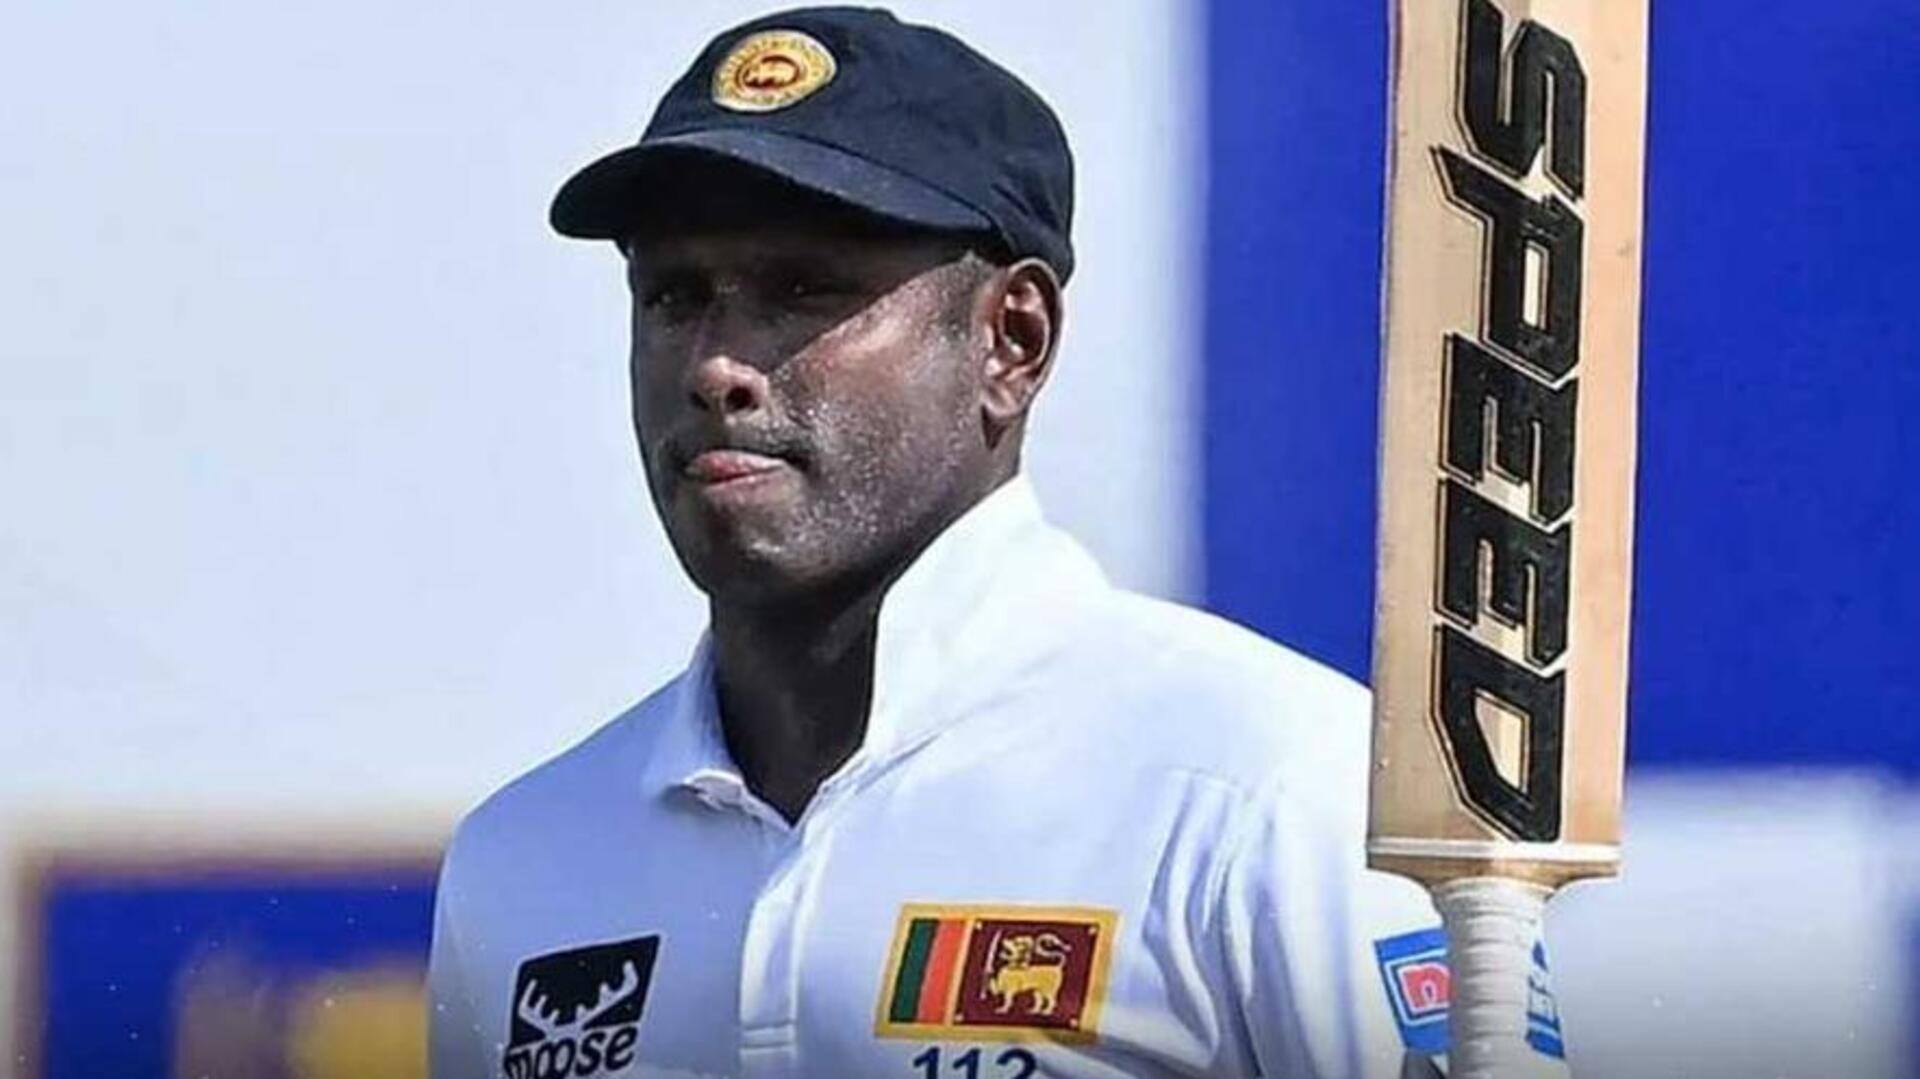 श्रीलंका बनाम पाकिस्तान: एंजेलो मैथ्यूज ने लगाया टेस्ट करियर का 40वां अर्धशतक, जानिए उनके आंकड़े